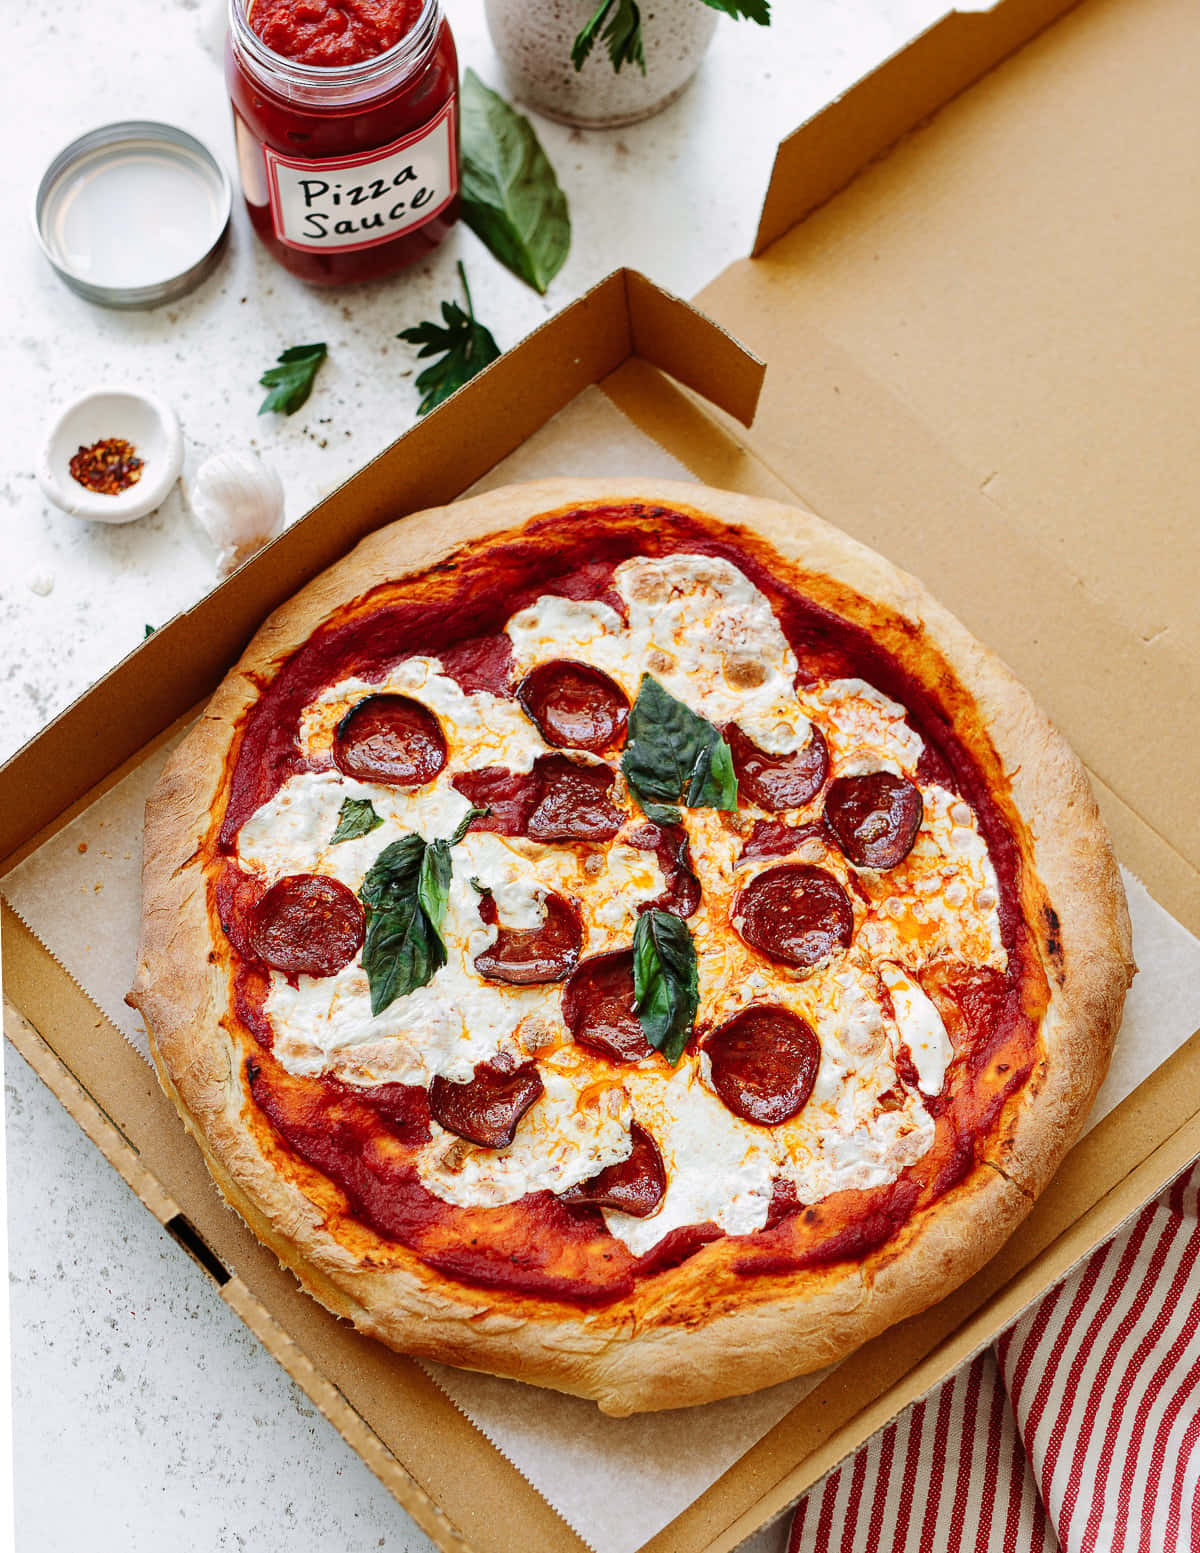 Bildeiner Pizza Solo In Einer Box.